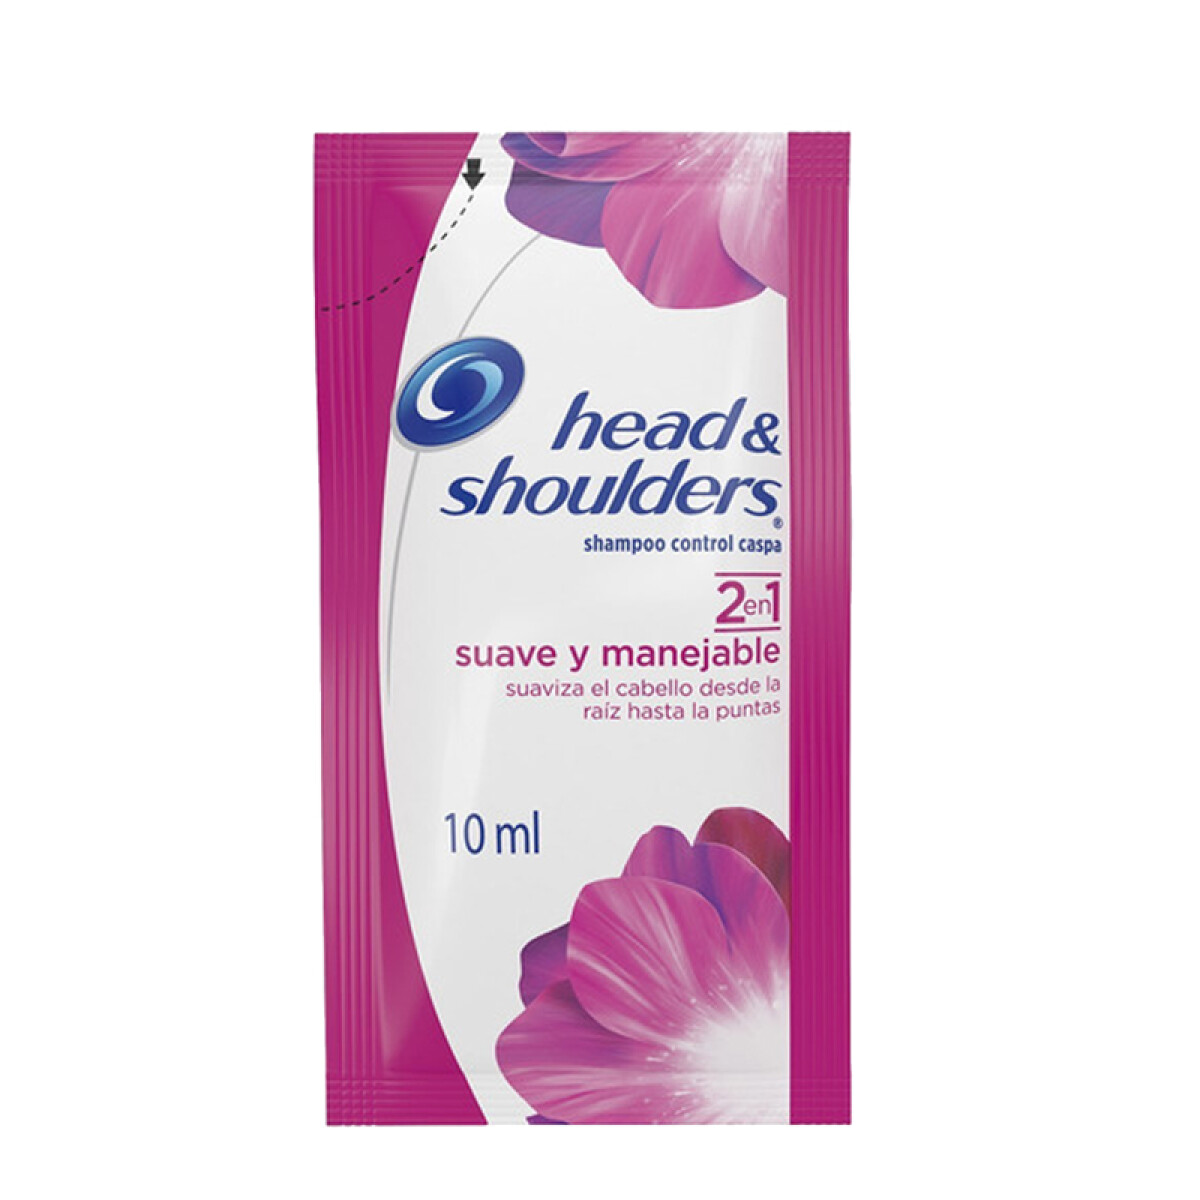 Sachet Shampoo HEAD & SHOULDERS 10ml x24 Unidades - Suave y Manejable 